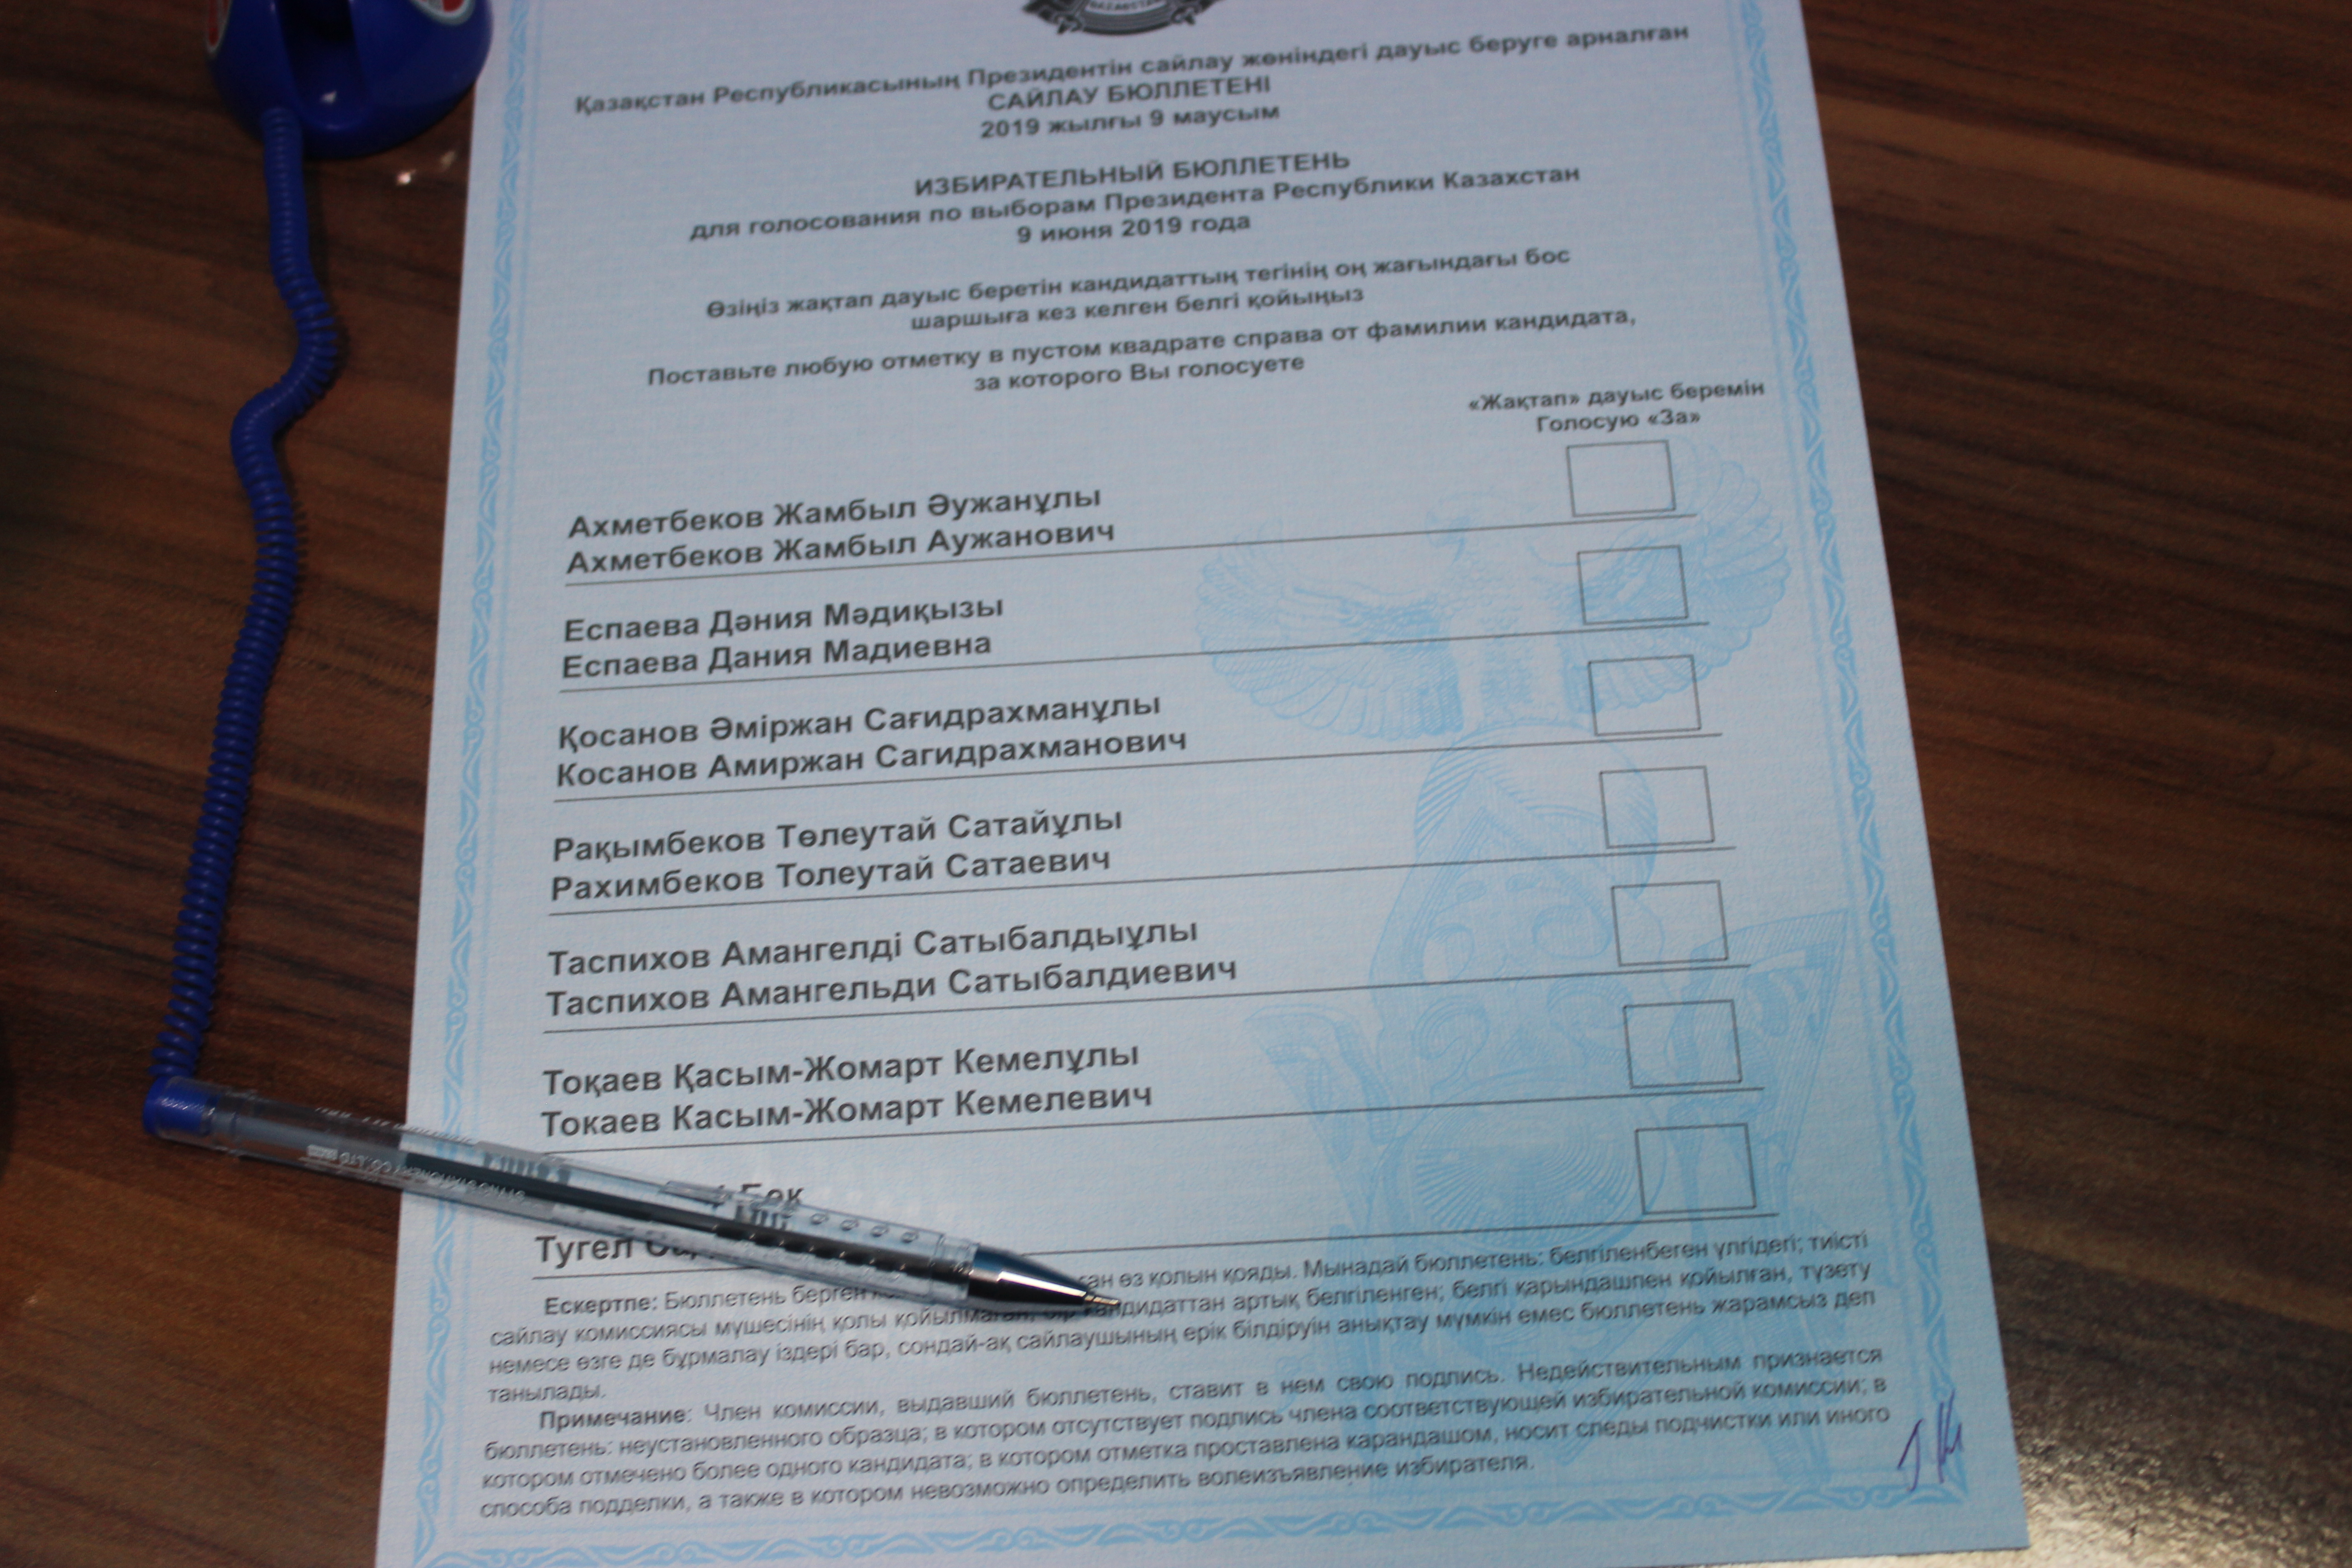 Печать избирательной комиссии на бюллетене